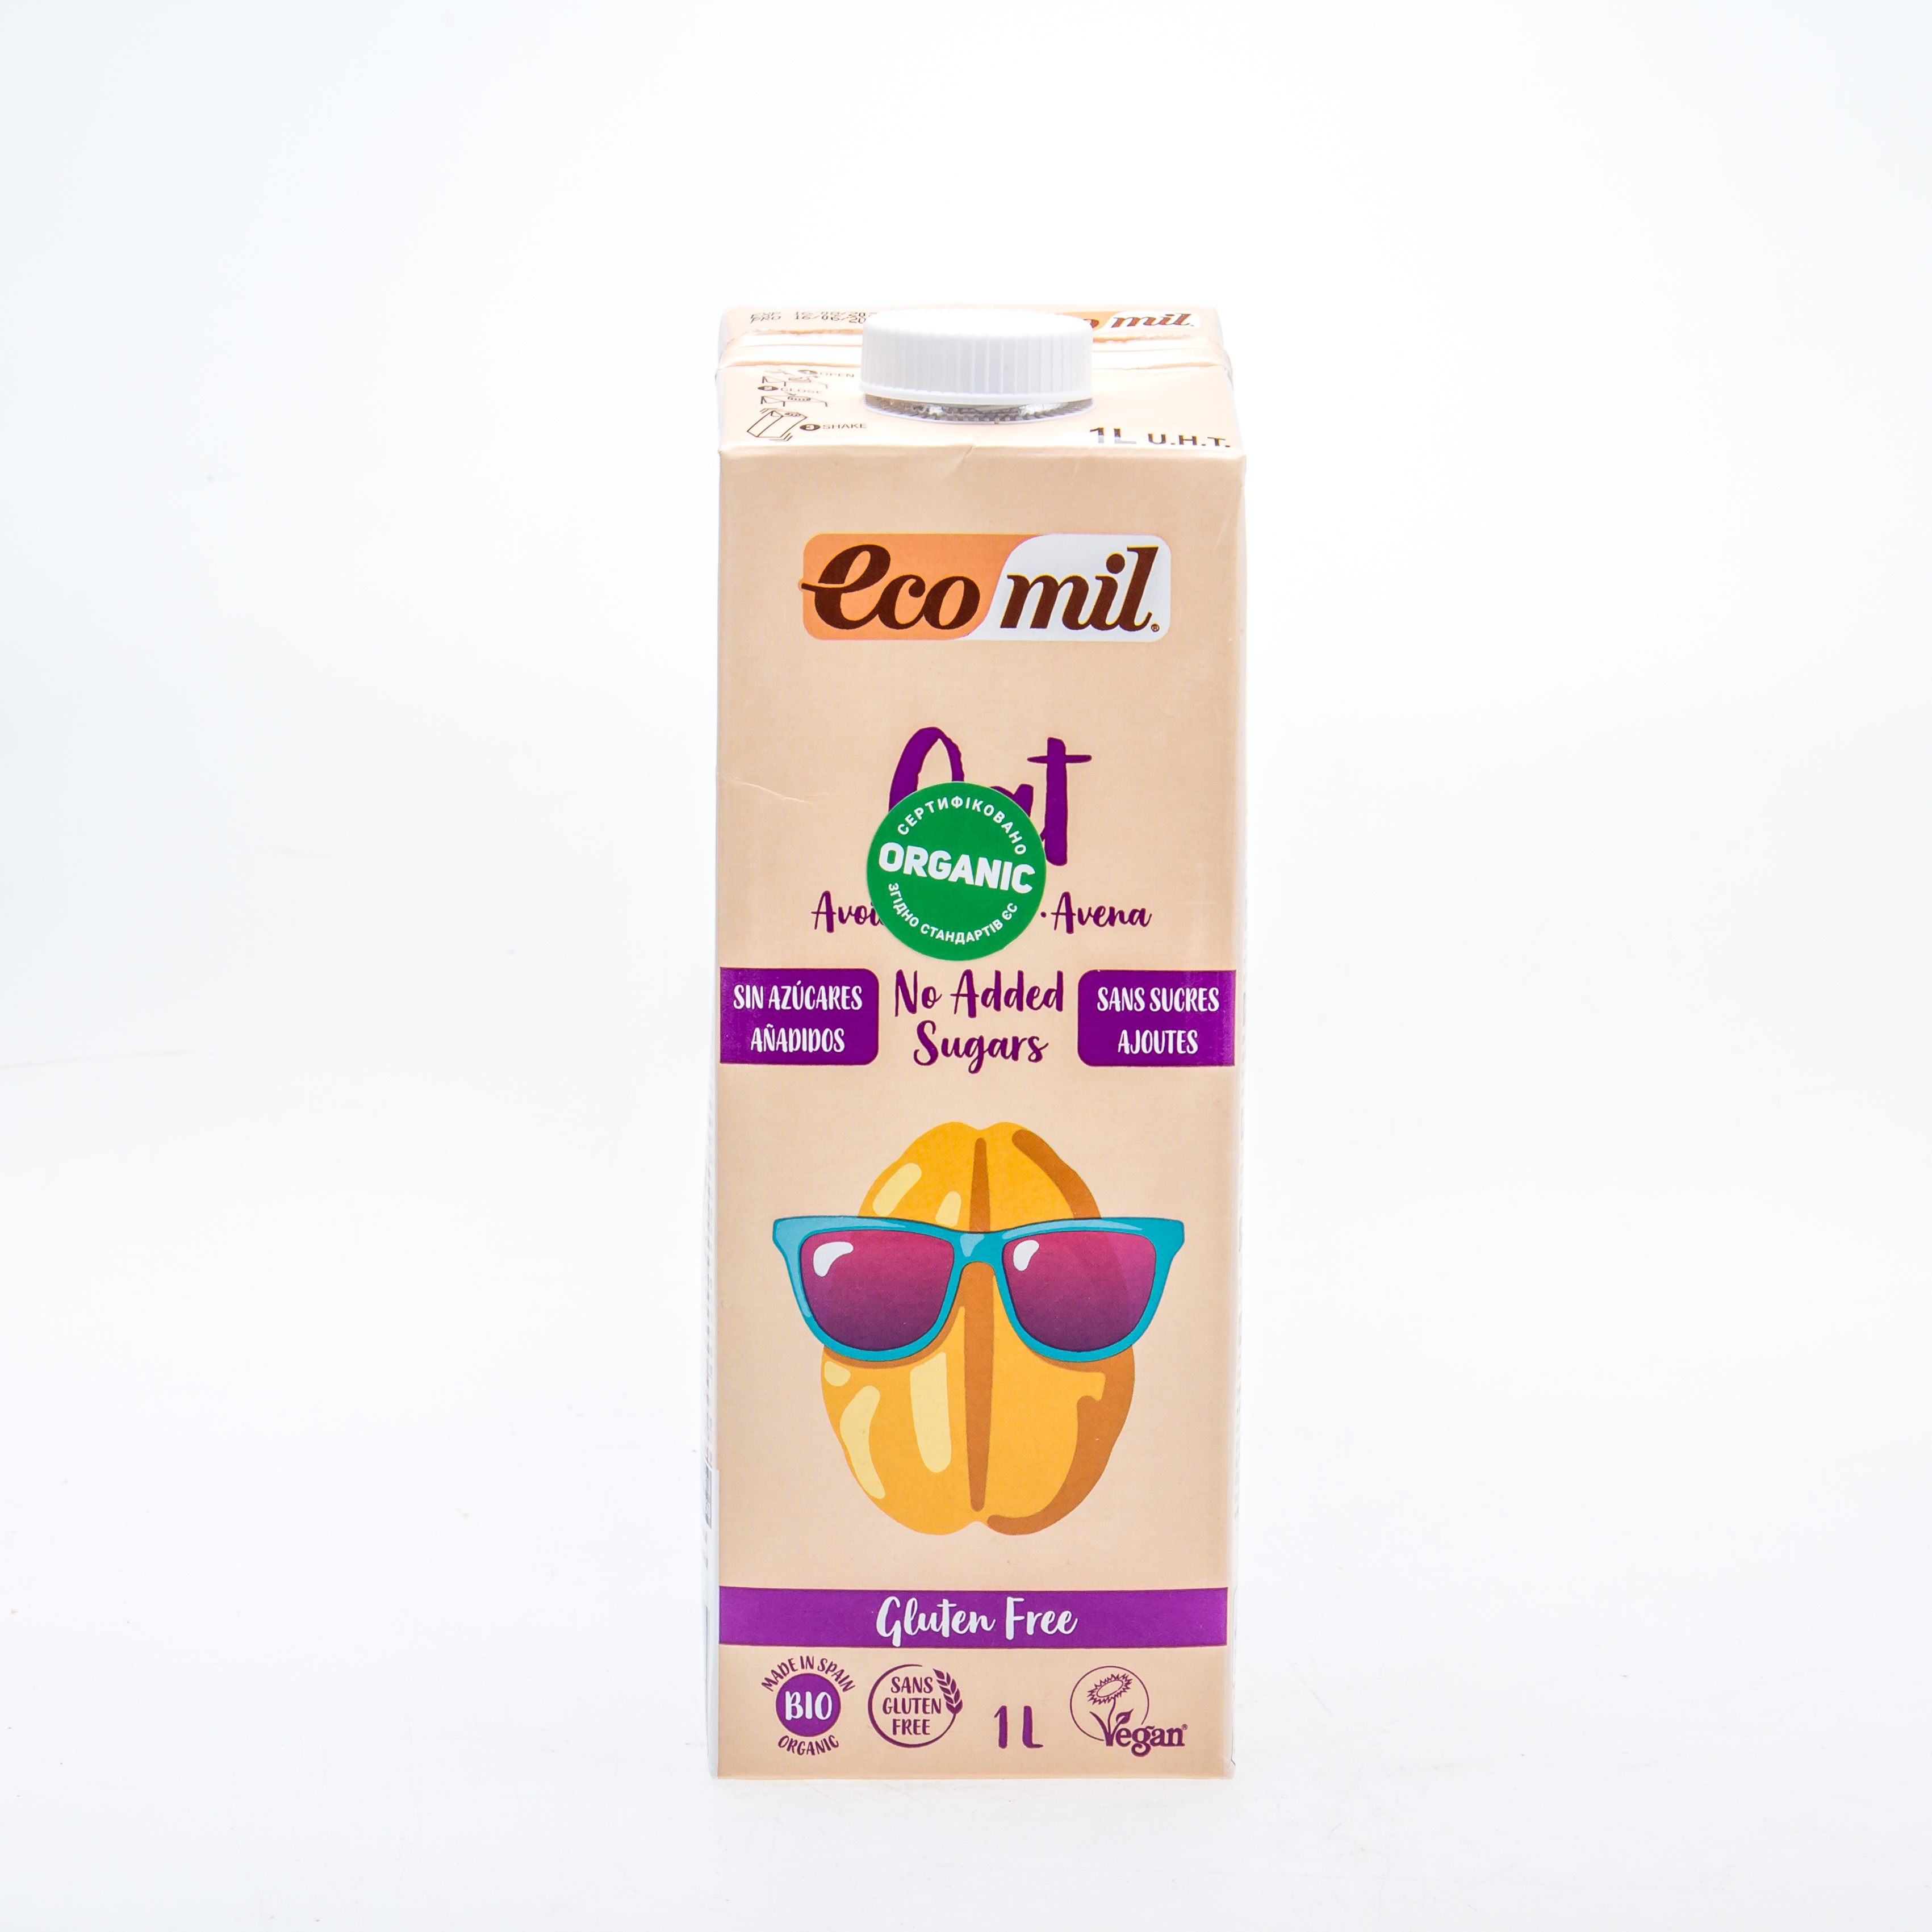 Органічне рослинне молоко з вівса без додавання цукру та глютену, 1л - купить в интернет-магазине Юнимед